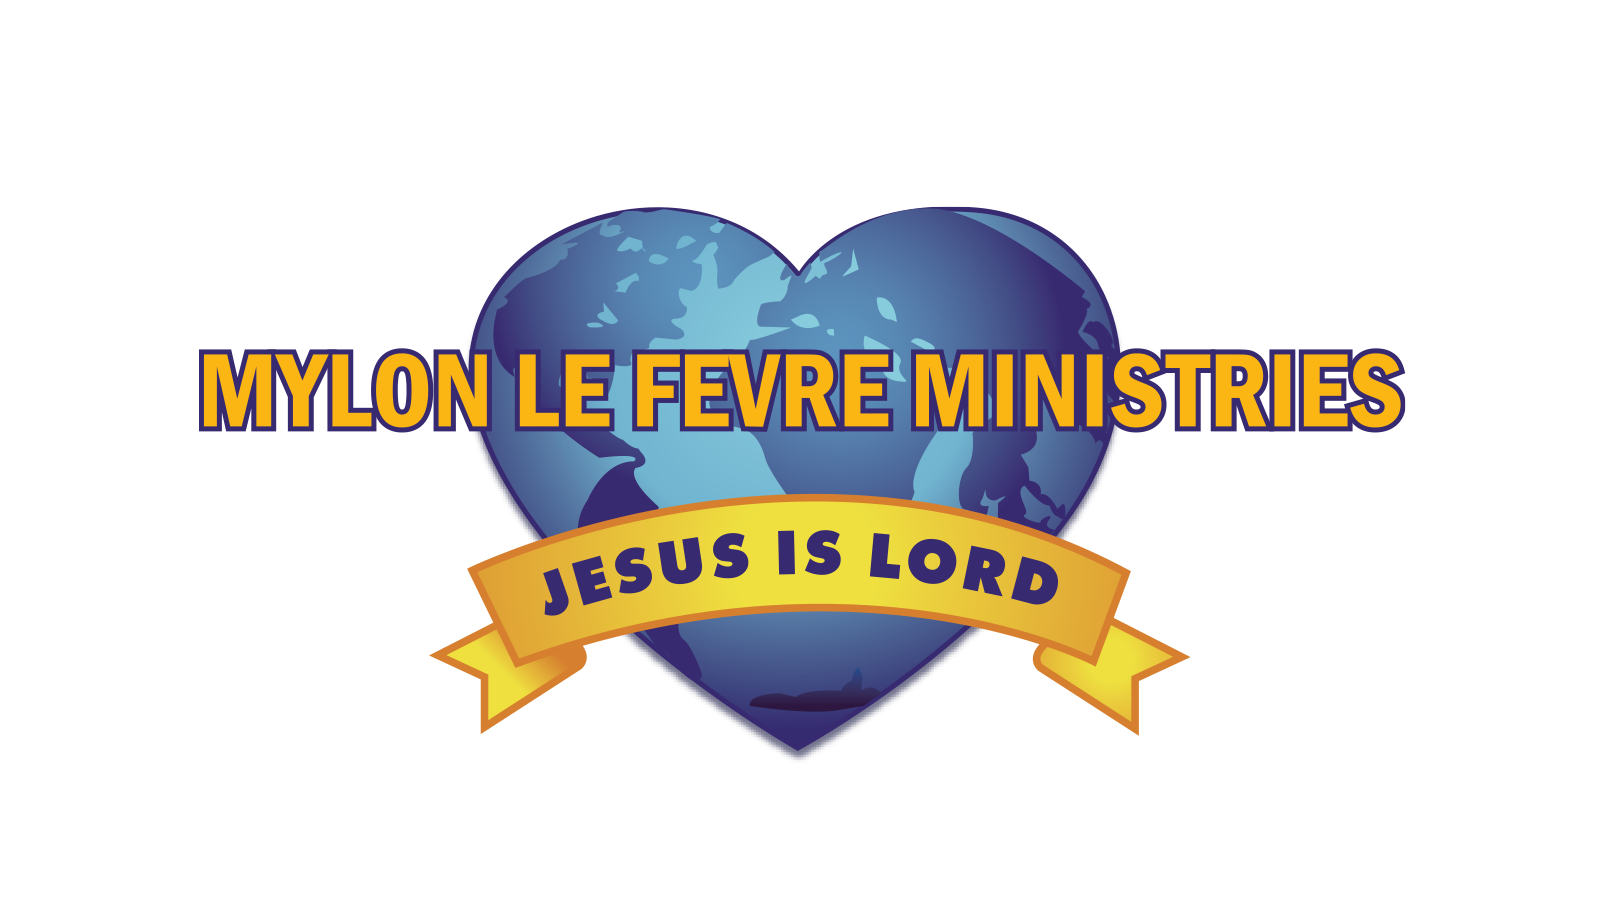 Mylon Le Fevre Ministries heart logo